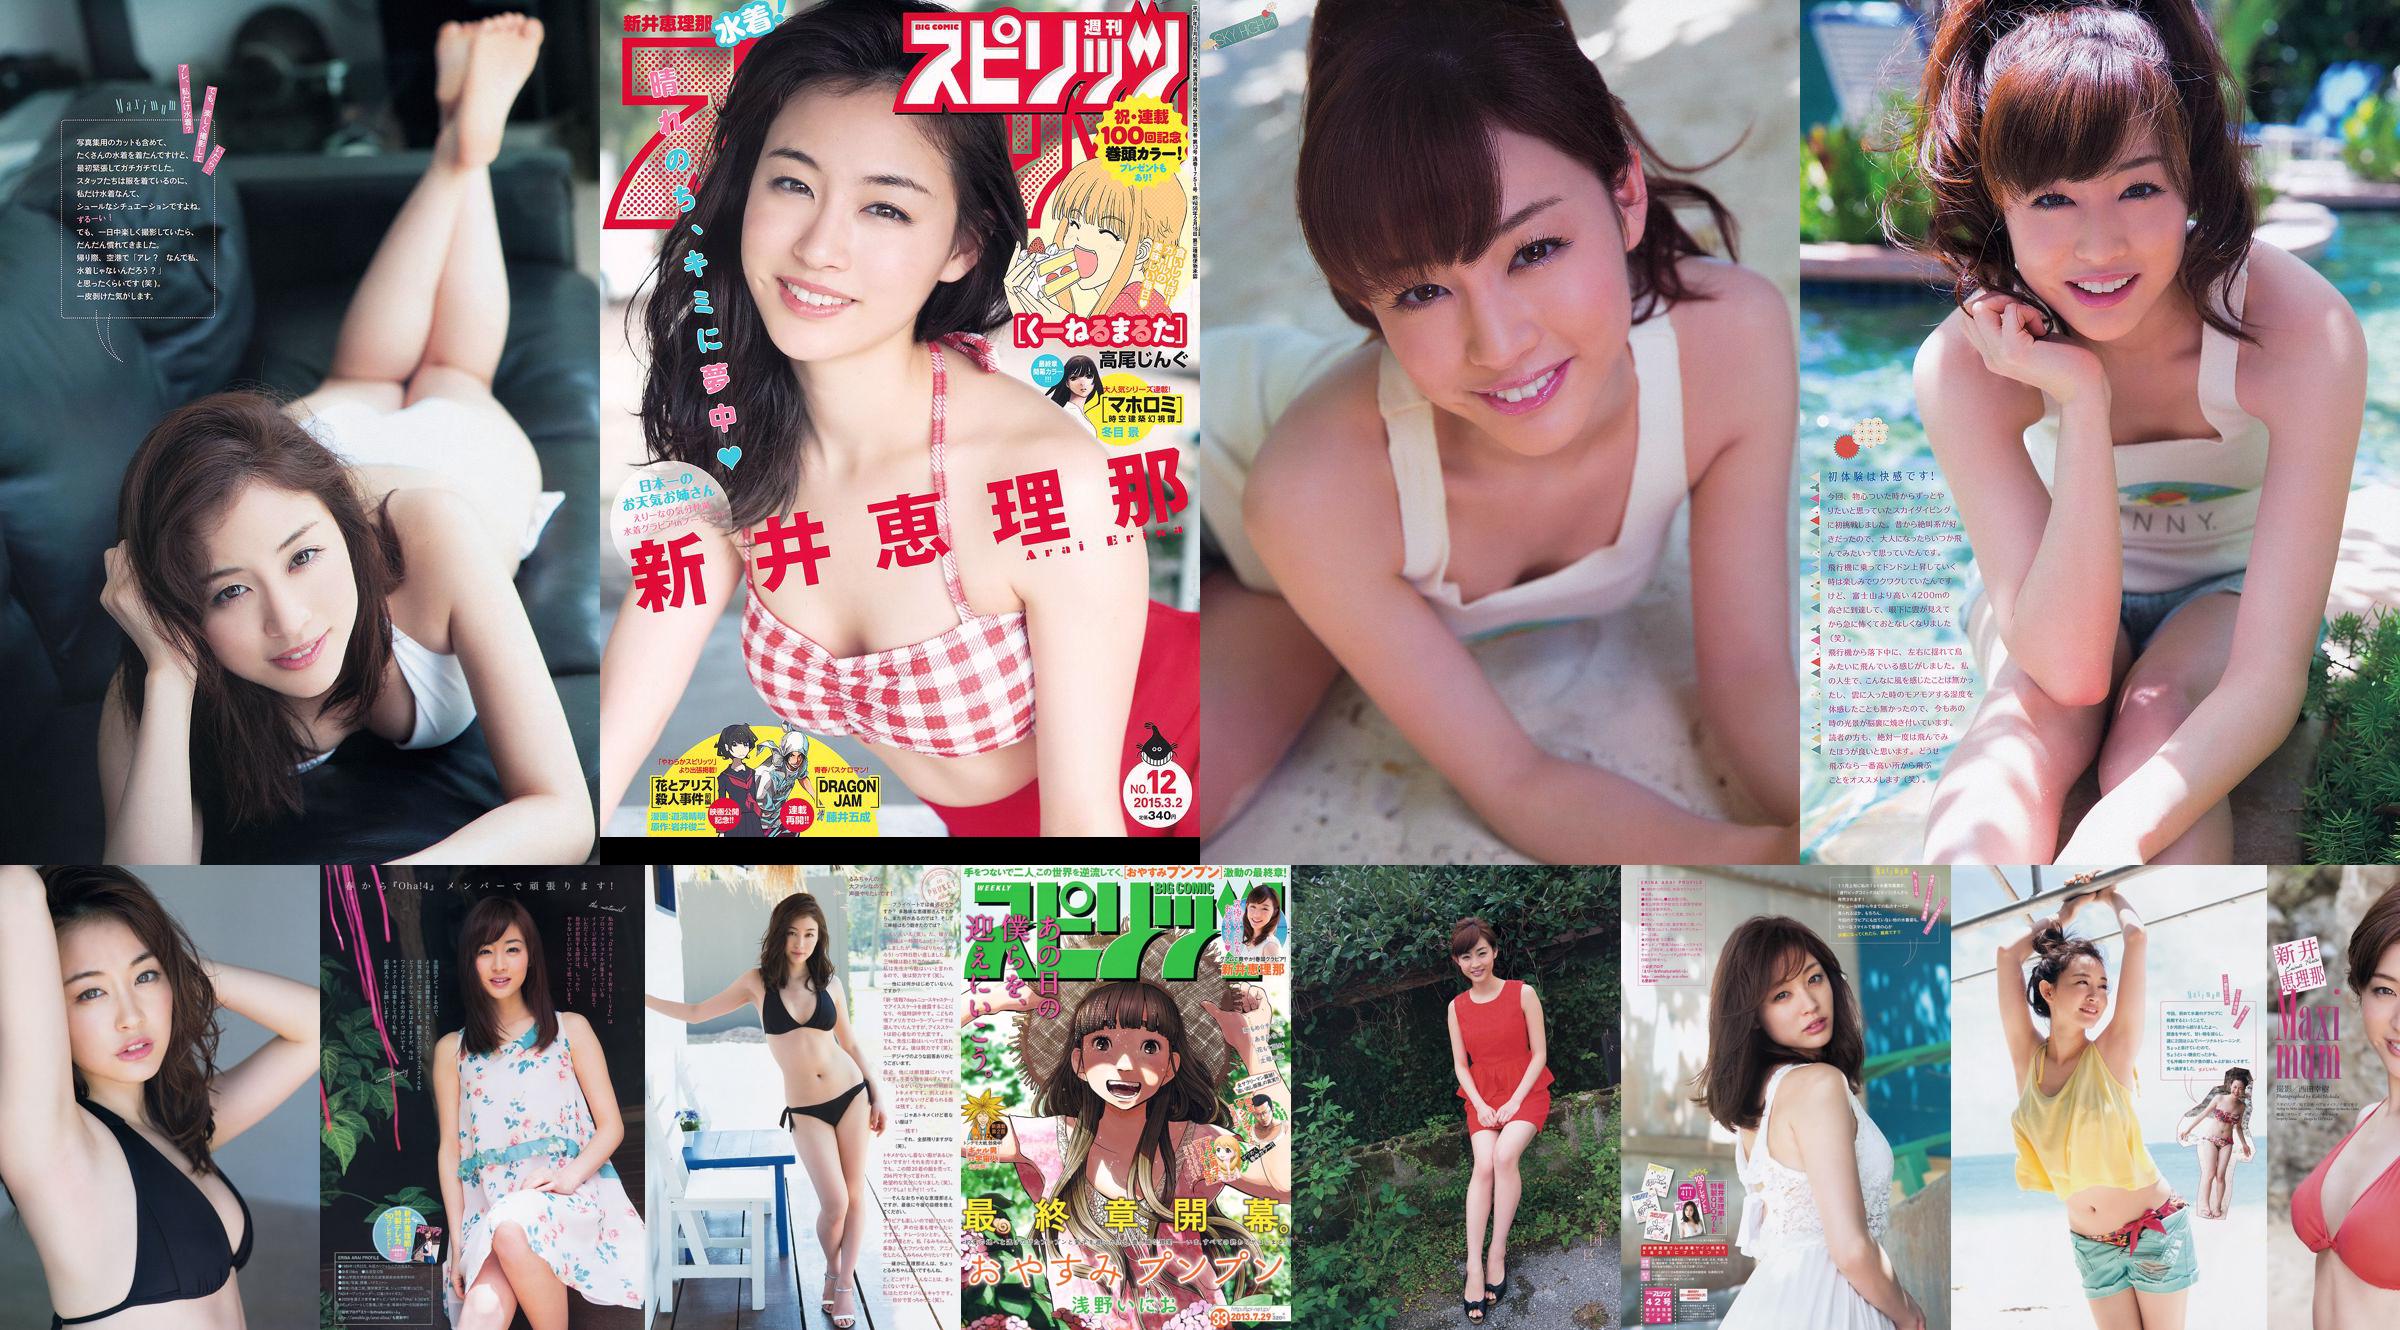 [Wöchentliche große Comic-Geister] Erina Arai No.12 Photo Magazine im Jahr 2015 No.c98a24 Seite 2